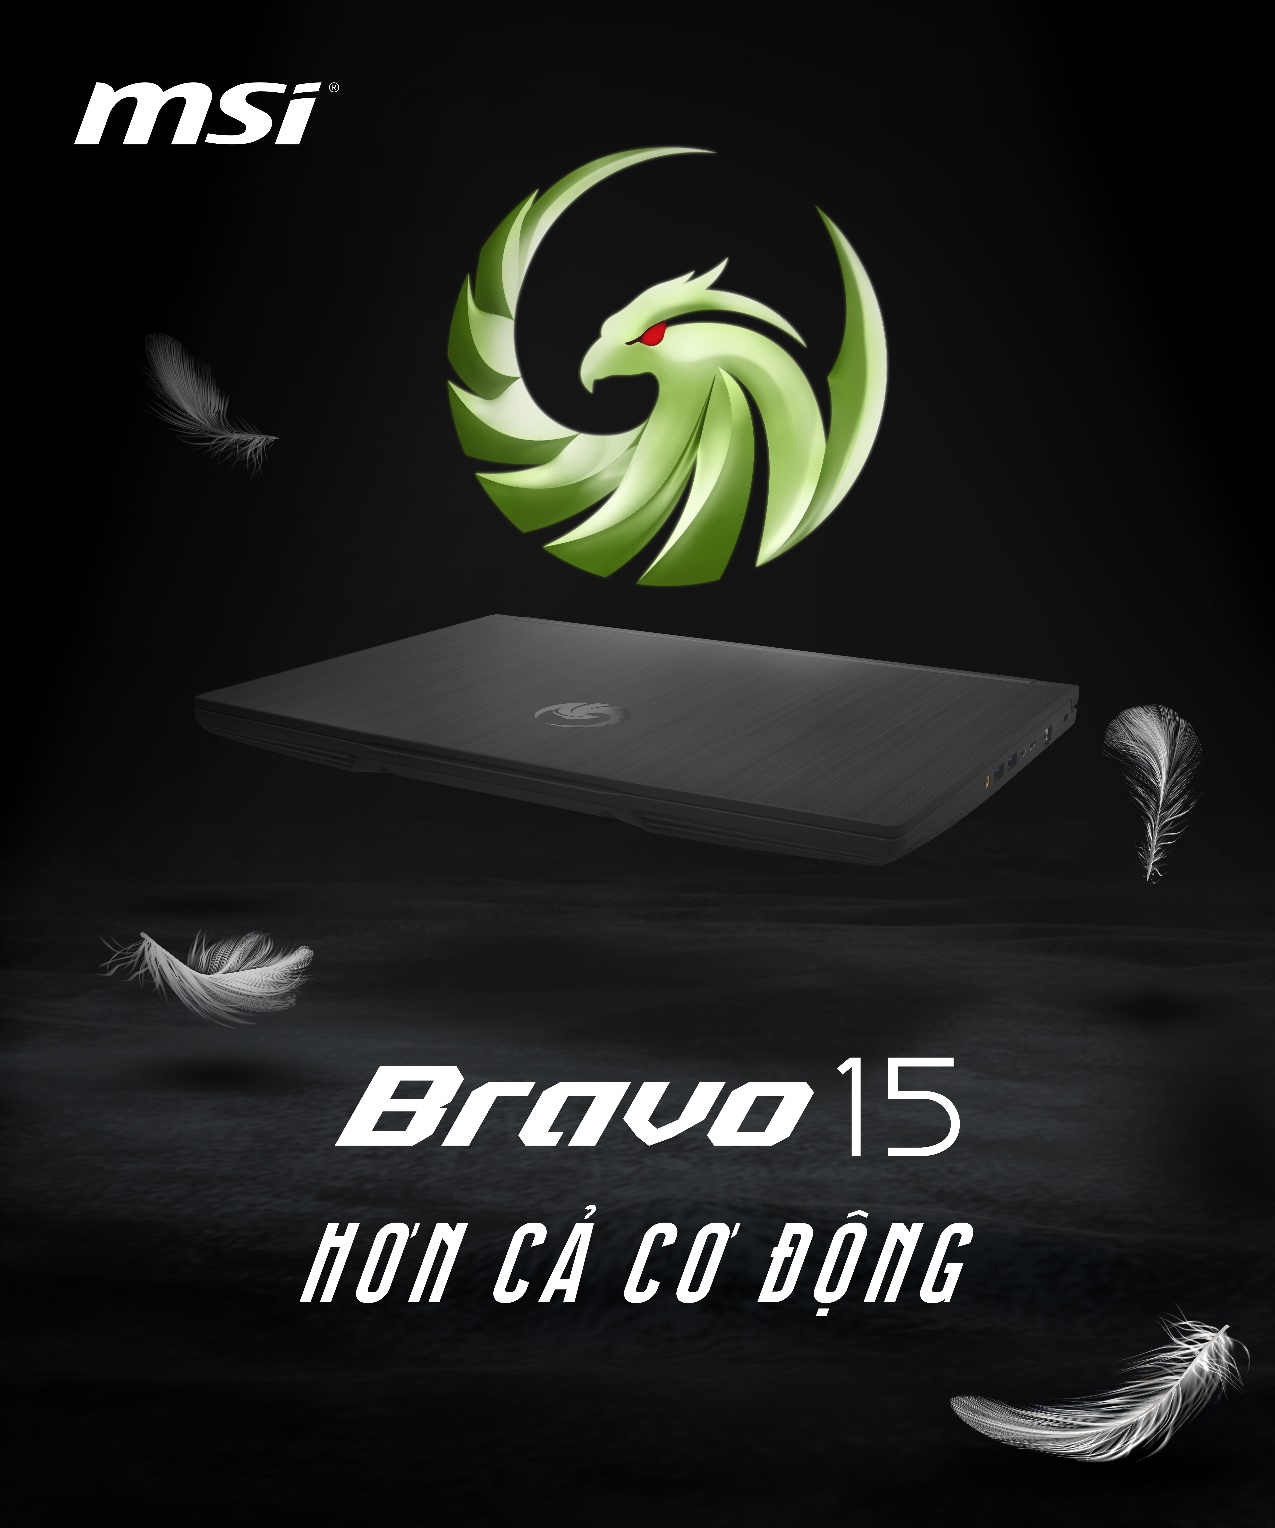 MSI ra mắt dòng Laptop Bravo 15, sử dụng vi xử lí AMD Ryzen Mobile 4000H